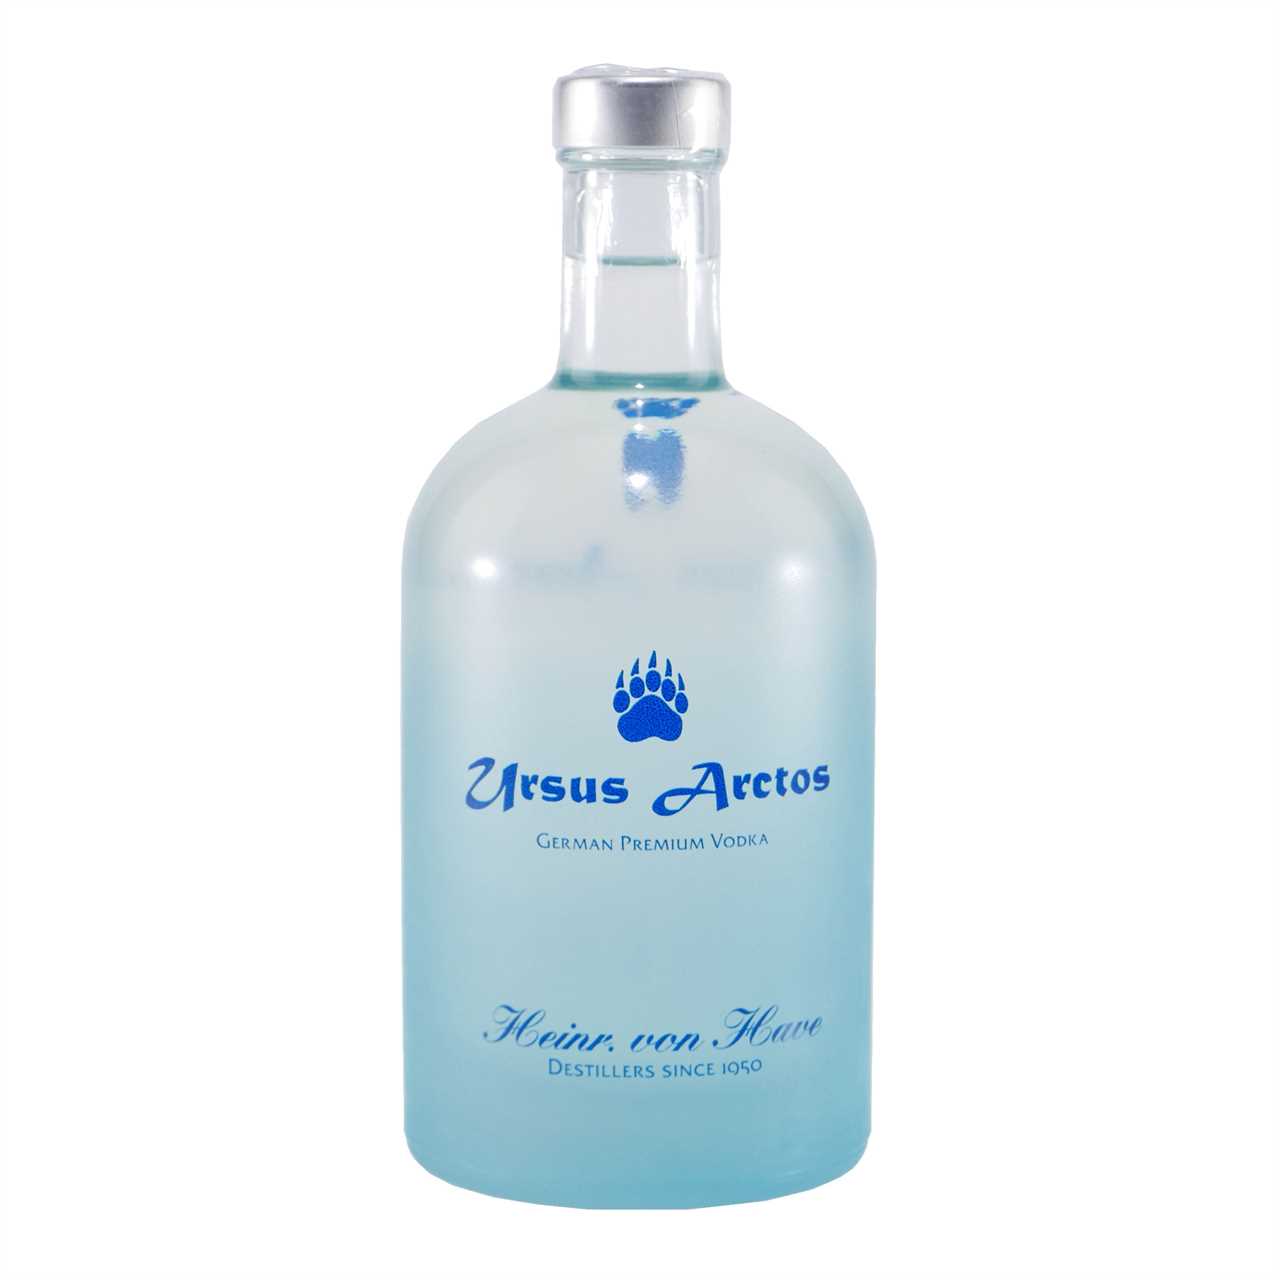 Heinr. von Have URSUS ARCTOS Premium Vodka Bisongras